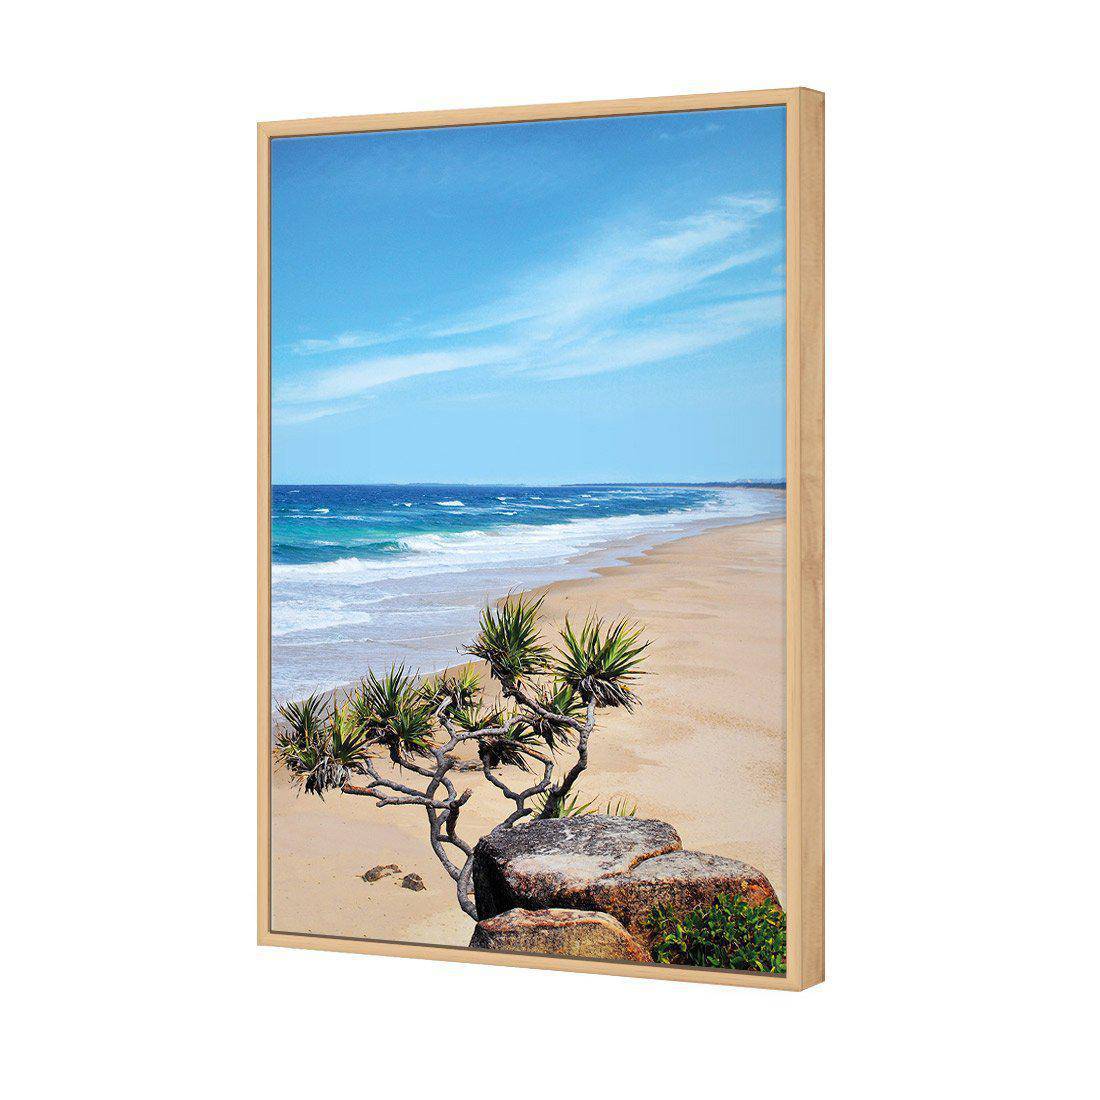 Coolum Beach Canvas Art-Canvas-Wall Art Designs-45x30cm-Canvas - Oak Frame-Wall Art Designs